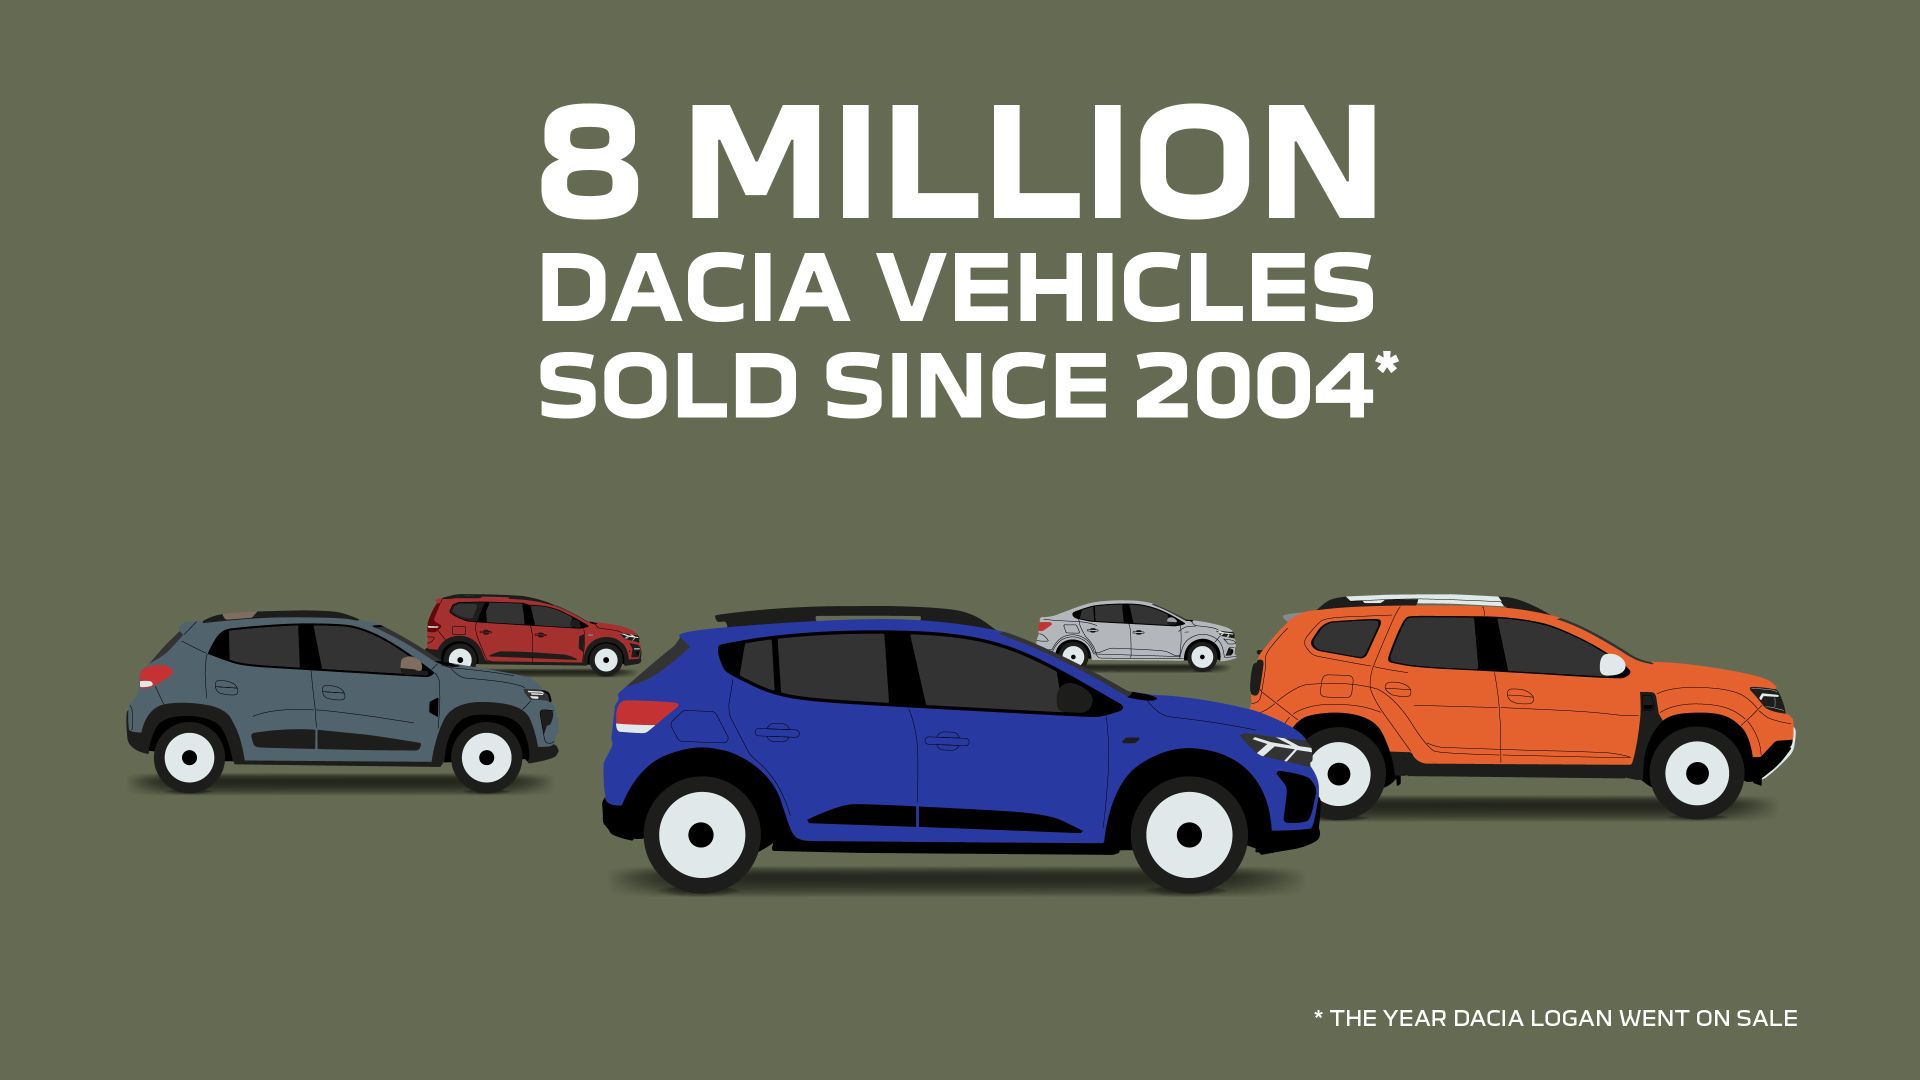 Od 2004. godine Dacia je pronašla put do čak 8 milijuna kupaca